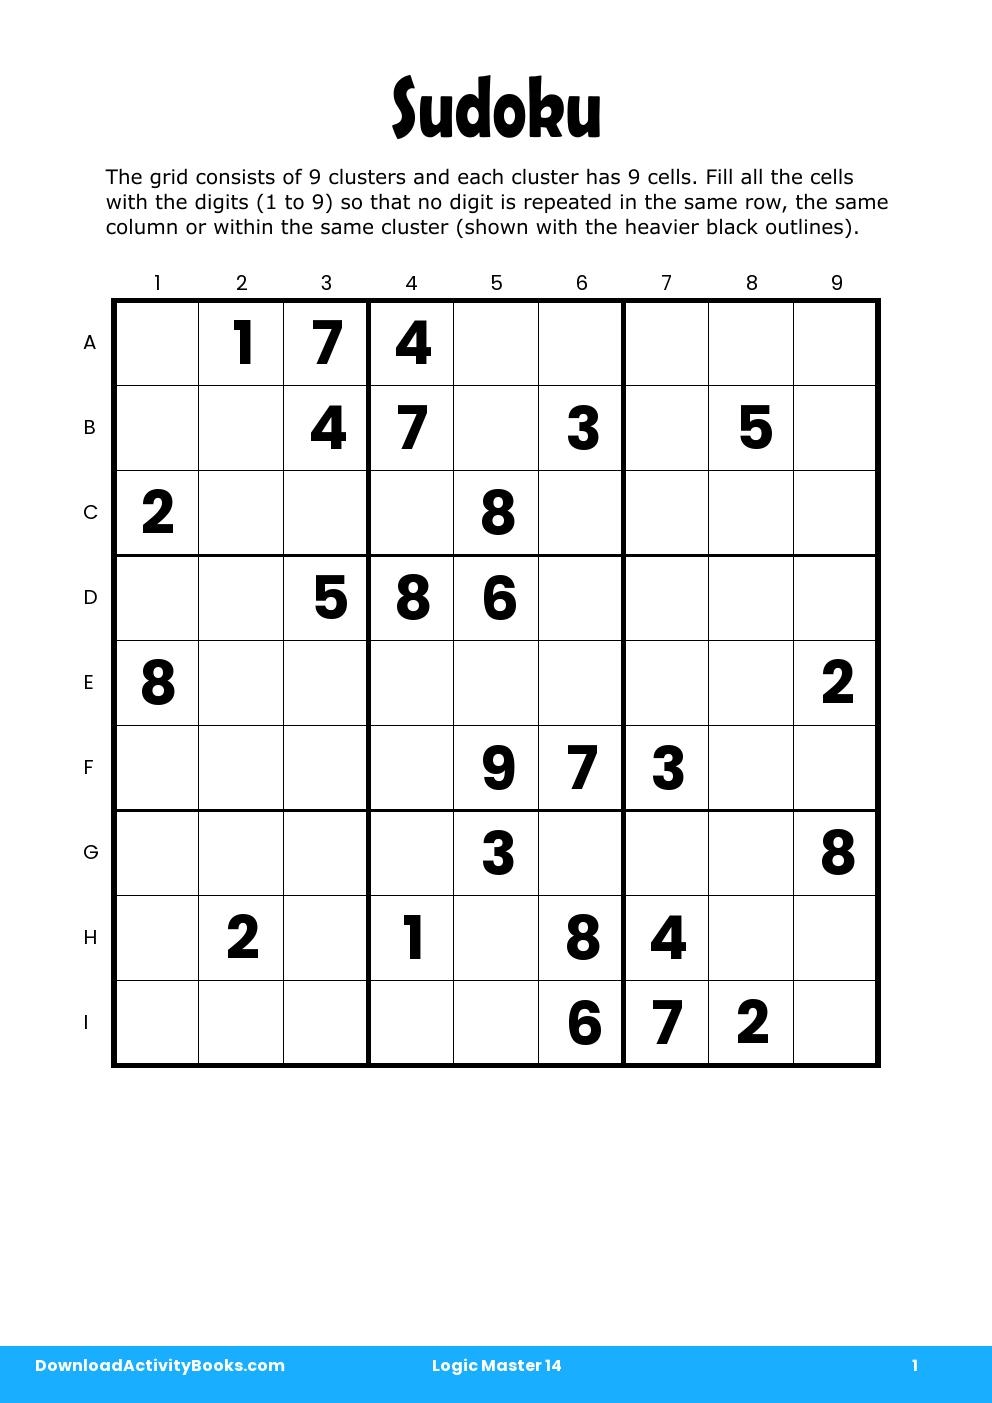 Sudoku in Logic Master 14